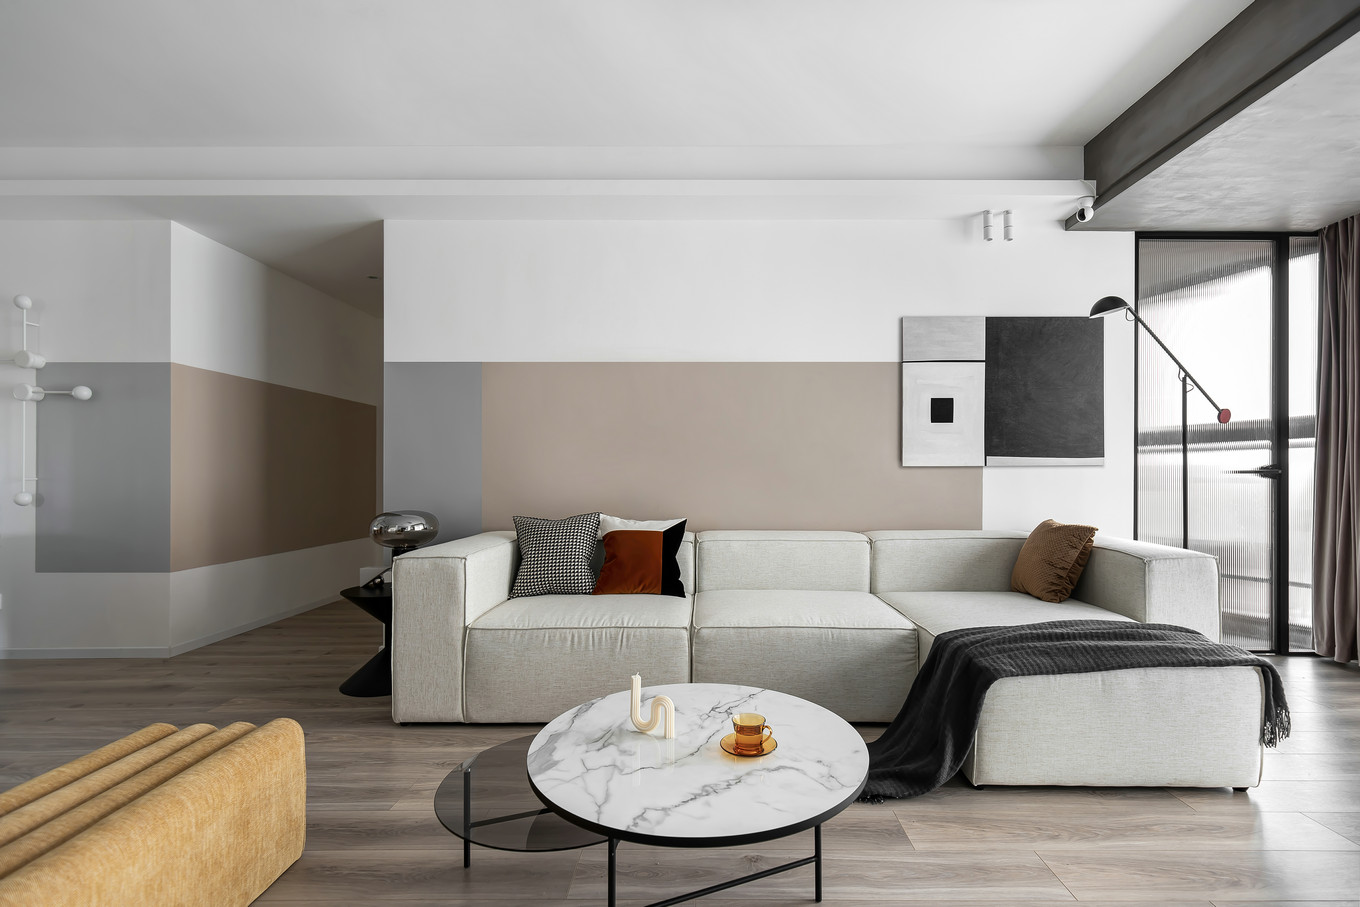 白色家具搭配让空间显得舒适放松，背景墙设计给空间增加了缤纷的元素，让客厅显得更加个性。